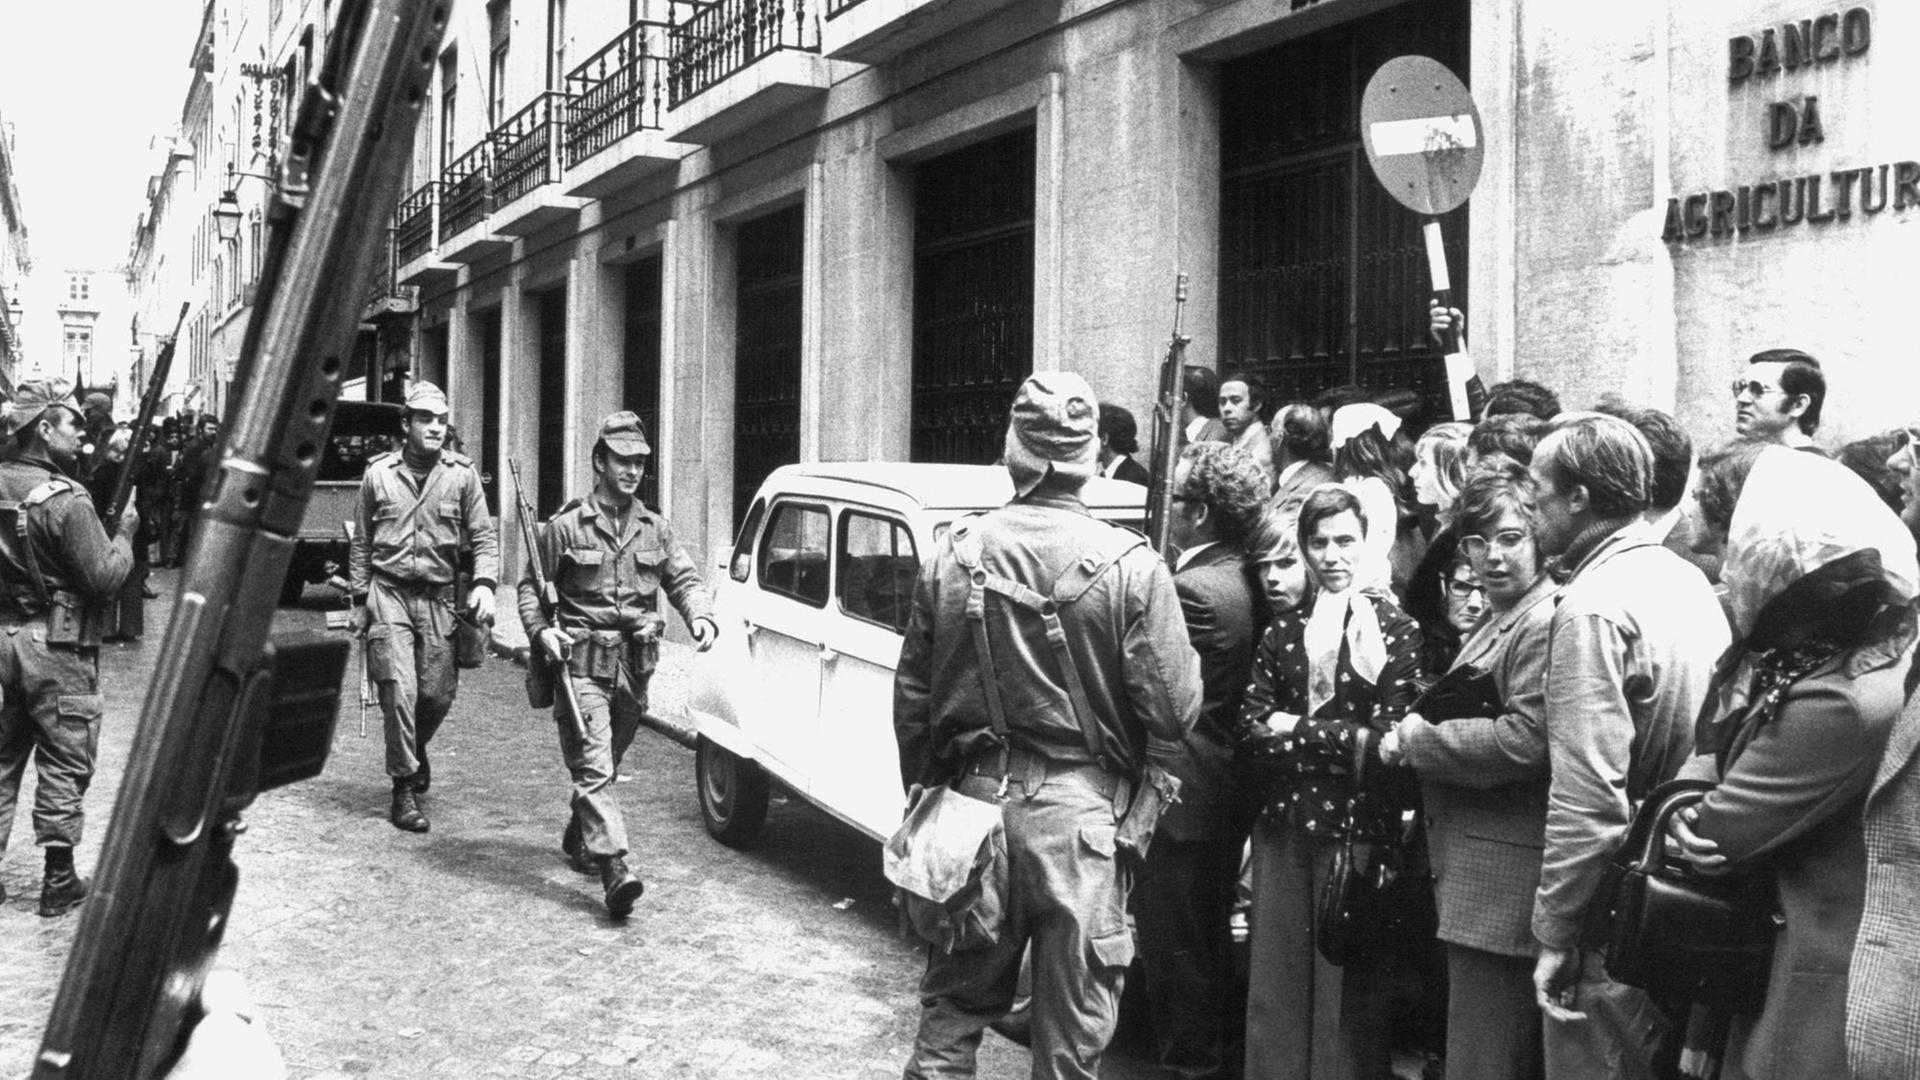 Soldaten sorgen am 29. April 1974 vor einem Bankgebäude in Lissabon für Ordung. Bei dem friedlichen Militärputsch vom 25. April 1974 wurde das diktatorische Regime Marcelo Caetano von oppositionellen Offizieren gestürzt. Portugals Befreiung von der Diktatur ging als "Nelkenrevolution" in die Geschichtsbücher ein.